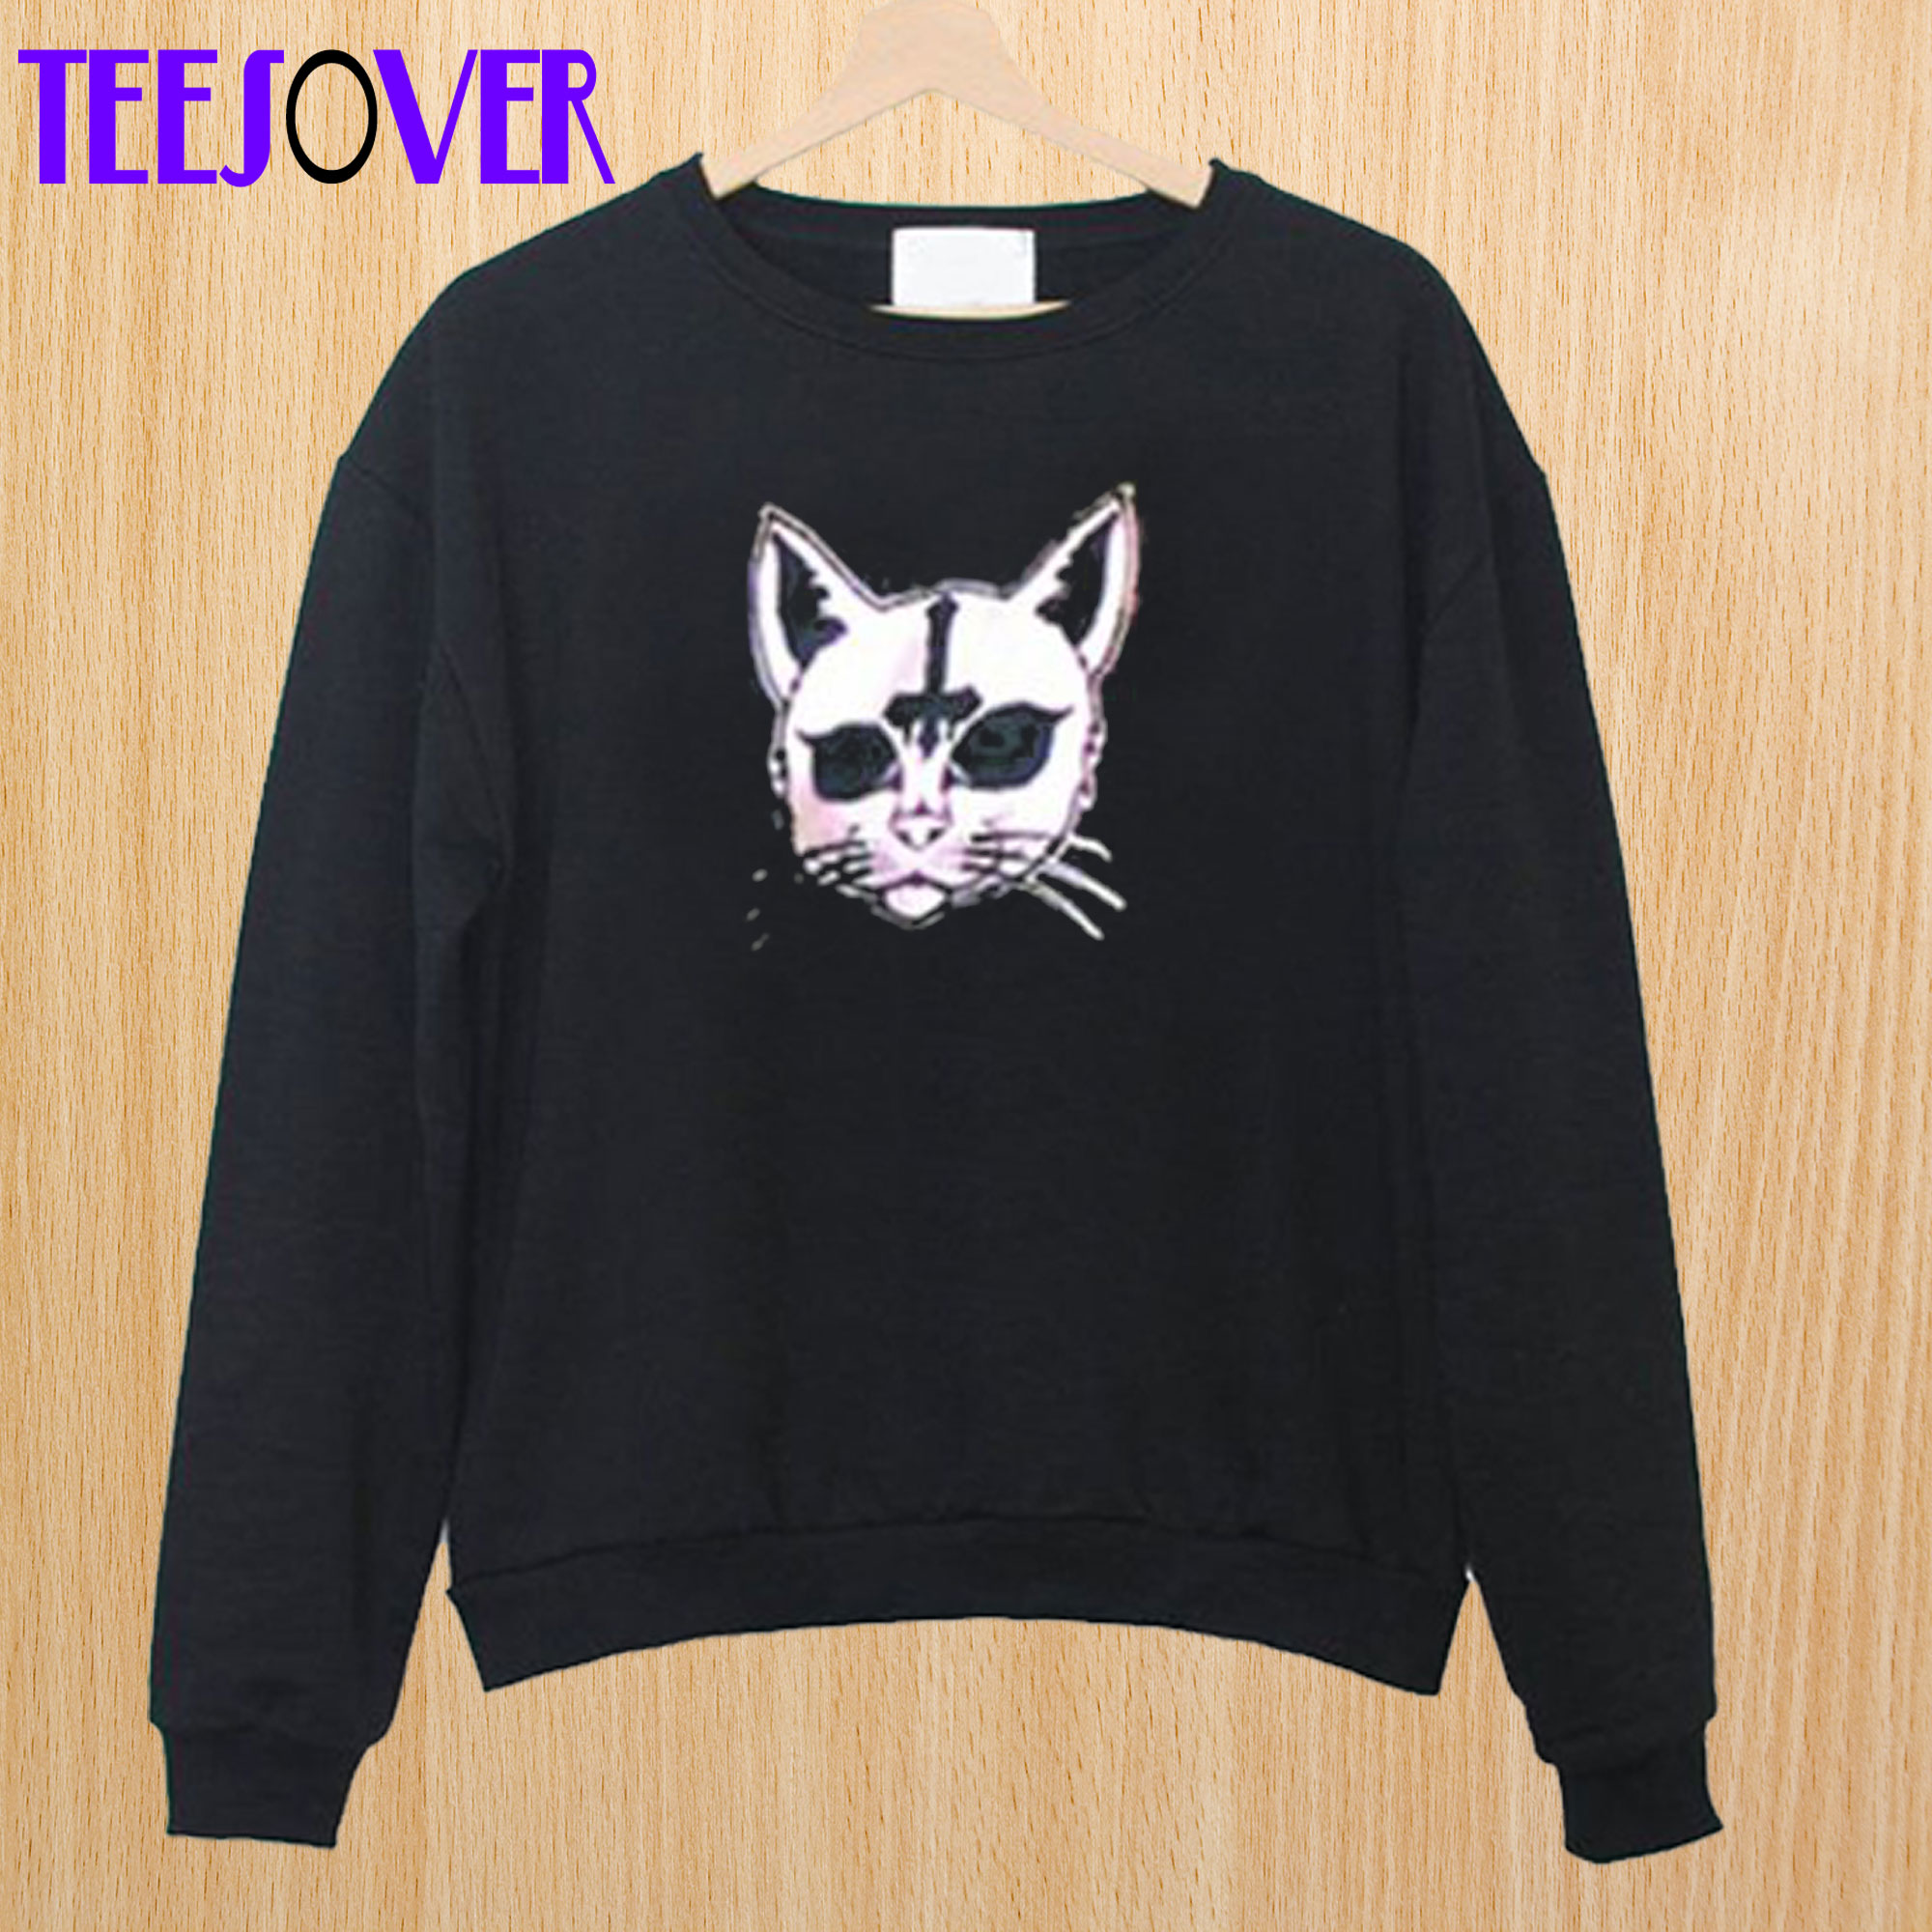 Black Cat Cross Sweatshirt